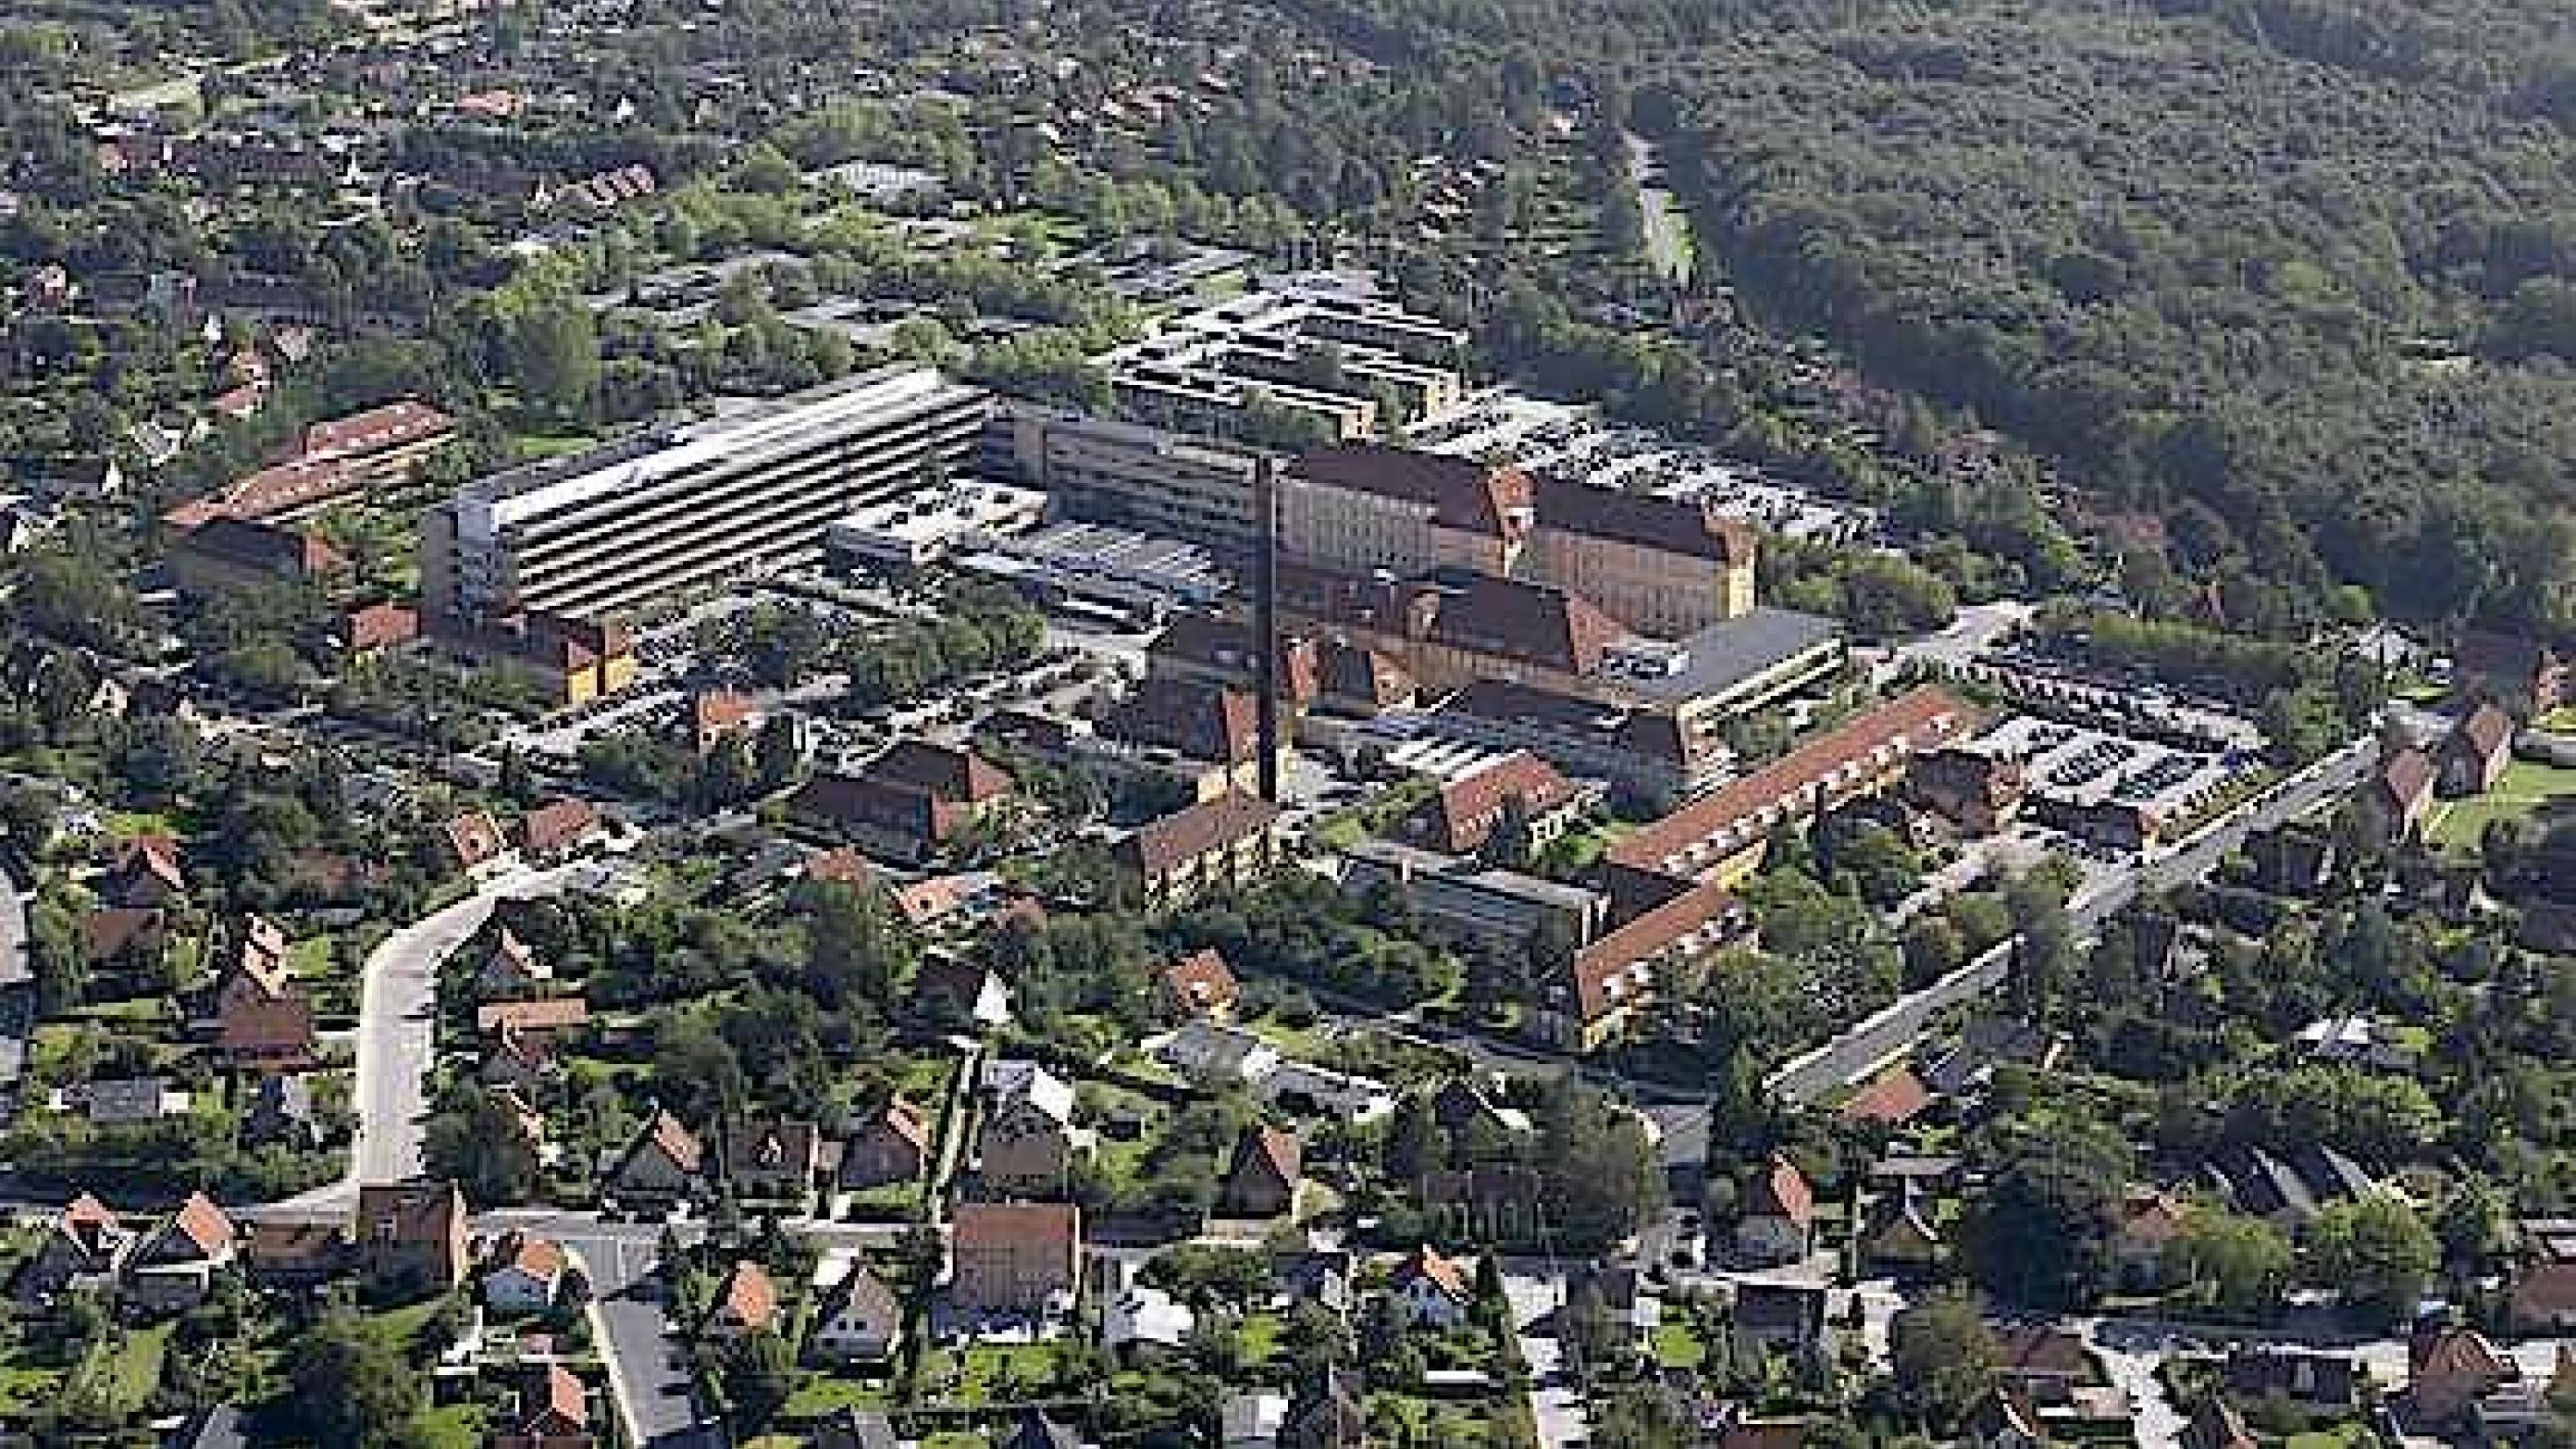 Den tilbagevendende overbelægning på Hillerød Hospital skyldes bl.a., at områdets befolkning bliver ældre og ældre. Foto: Region Hovedstaden